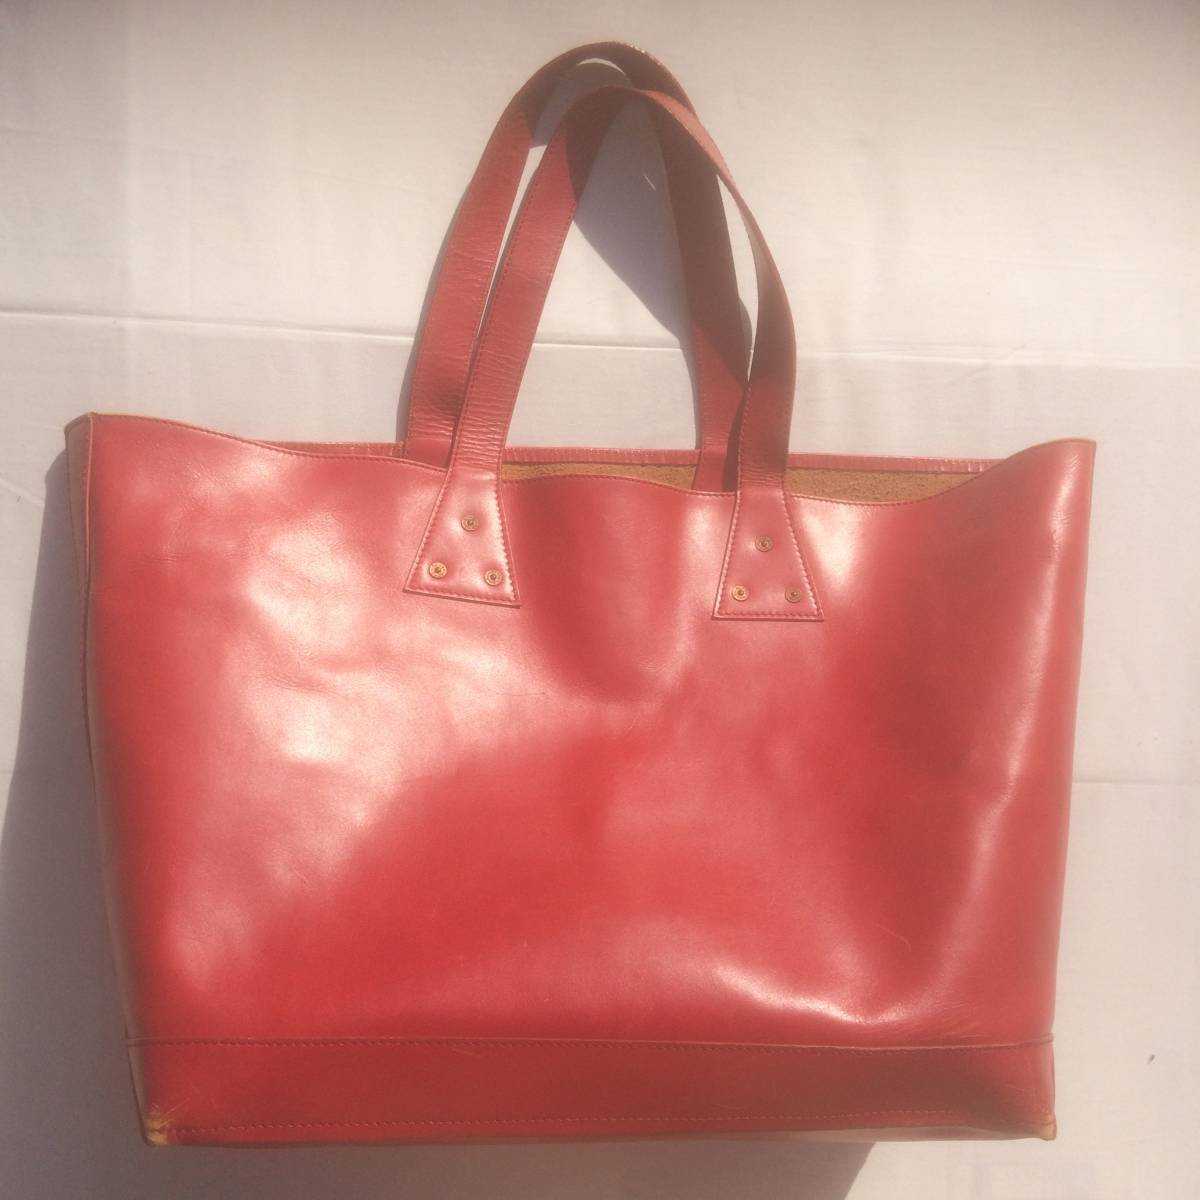 注目のブランド tote leather red エヴィス エビス EVISU bag 確認 画像 有り 汚れ スレ 革生地 ヒビ スレ トートバッグ レザー レッド その他